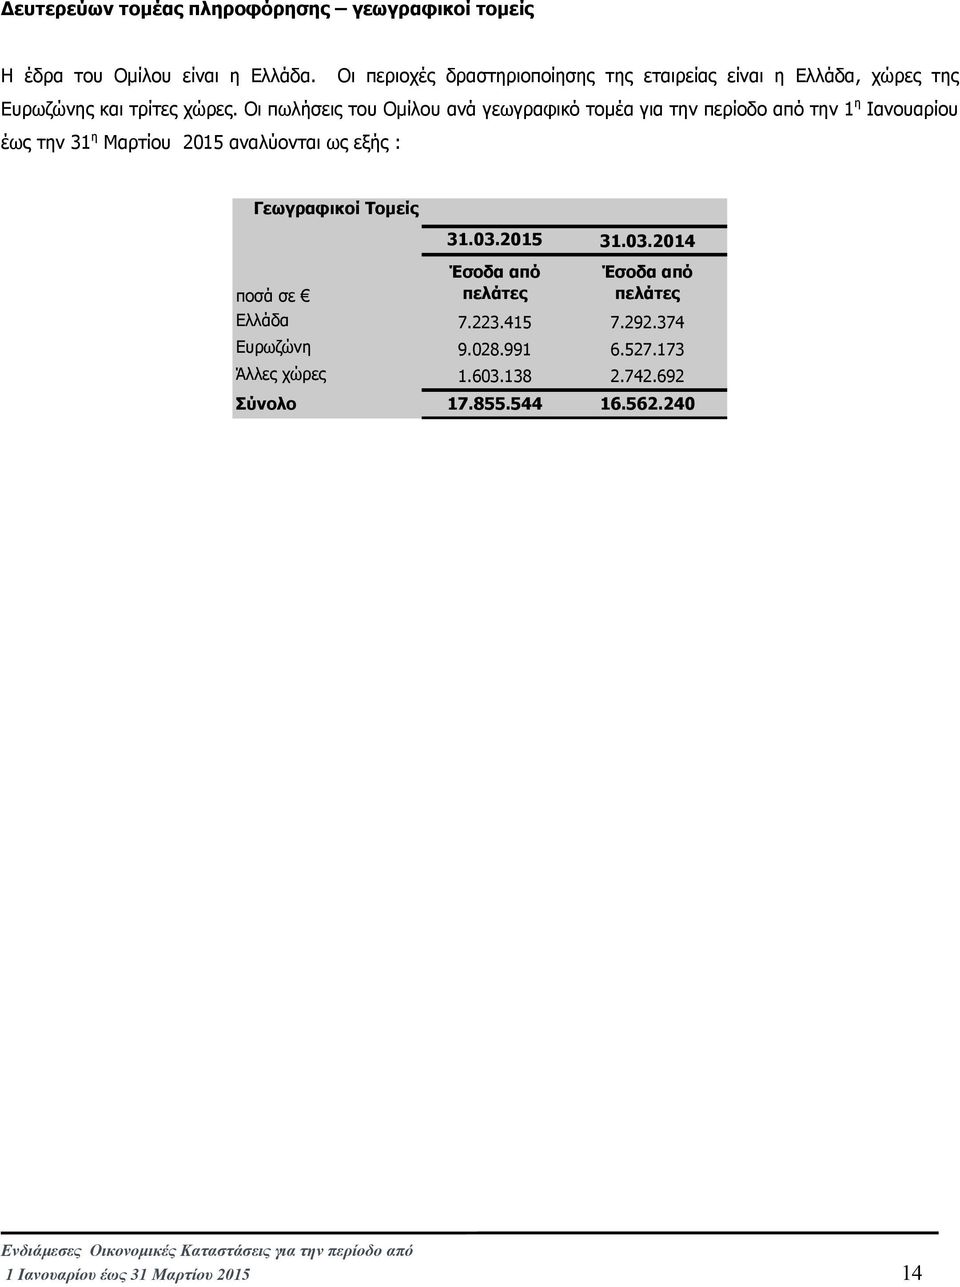 Οι πωλήσεις του Οµίλου ανά γεωγραφικό τοµέα για την περίοδο από την 1 η Ιανουαρίου έως την 31 η Μαρτίου 2015 αναλύονται ως εξής :